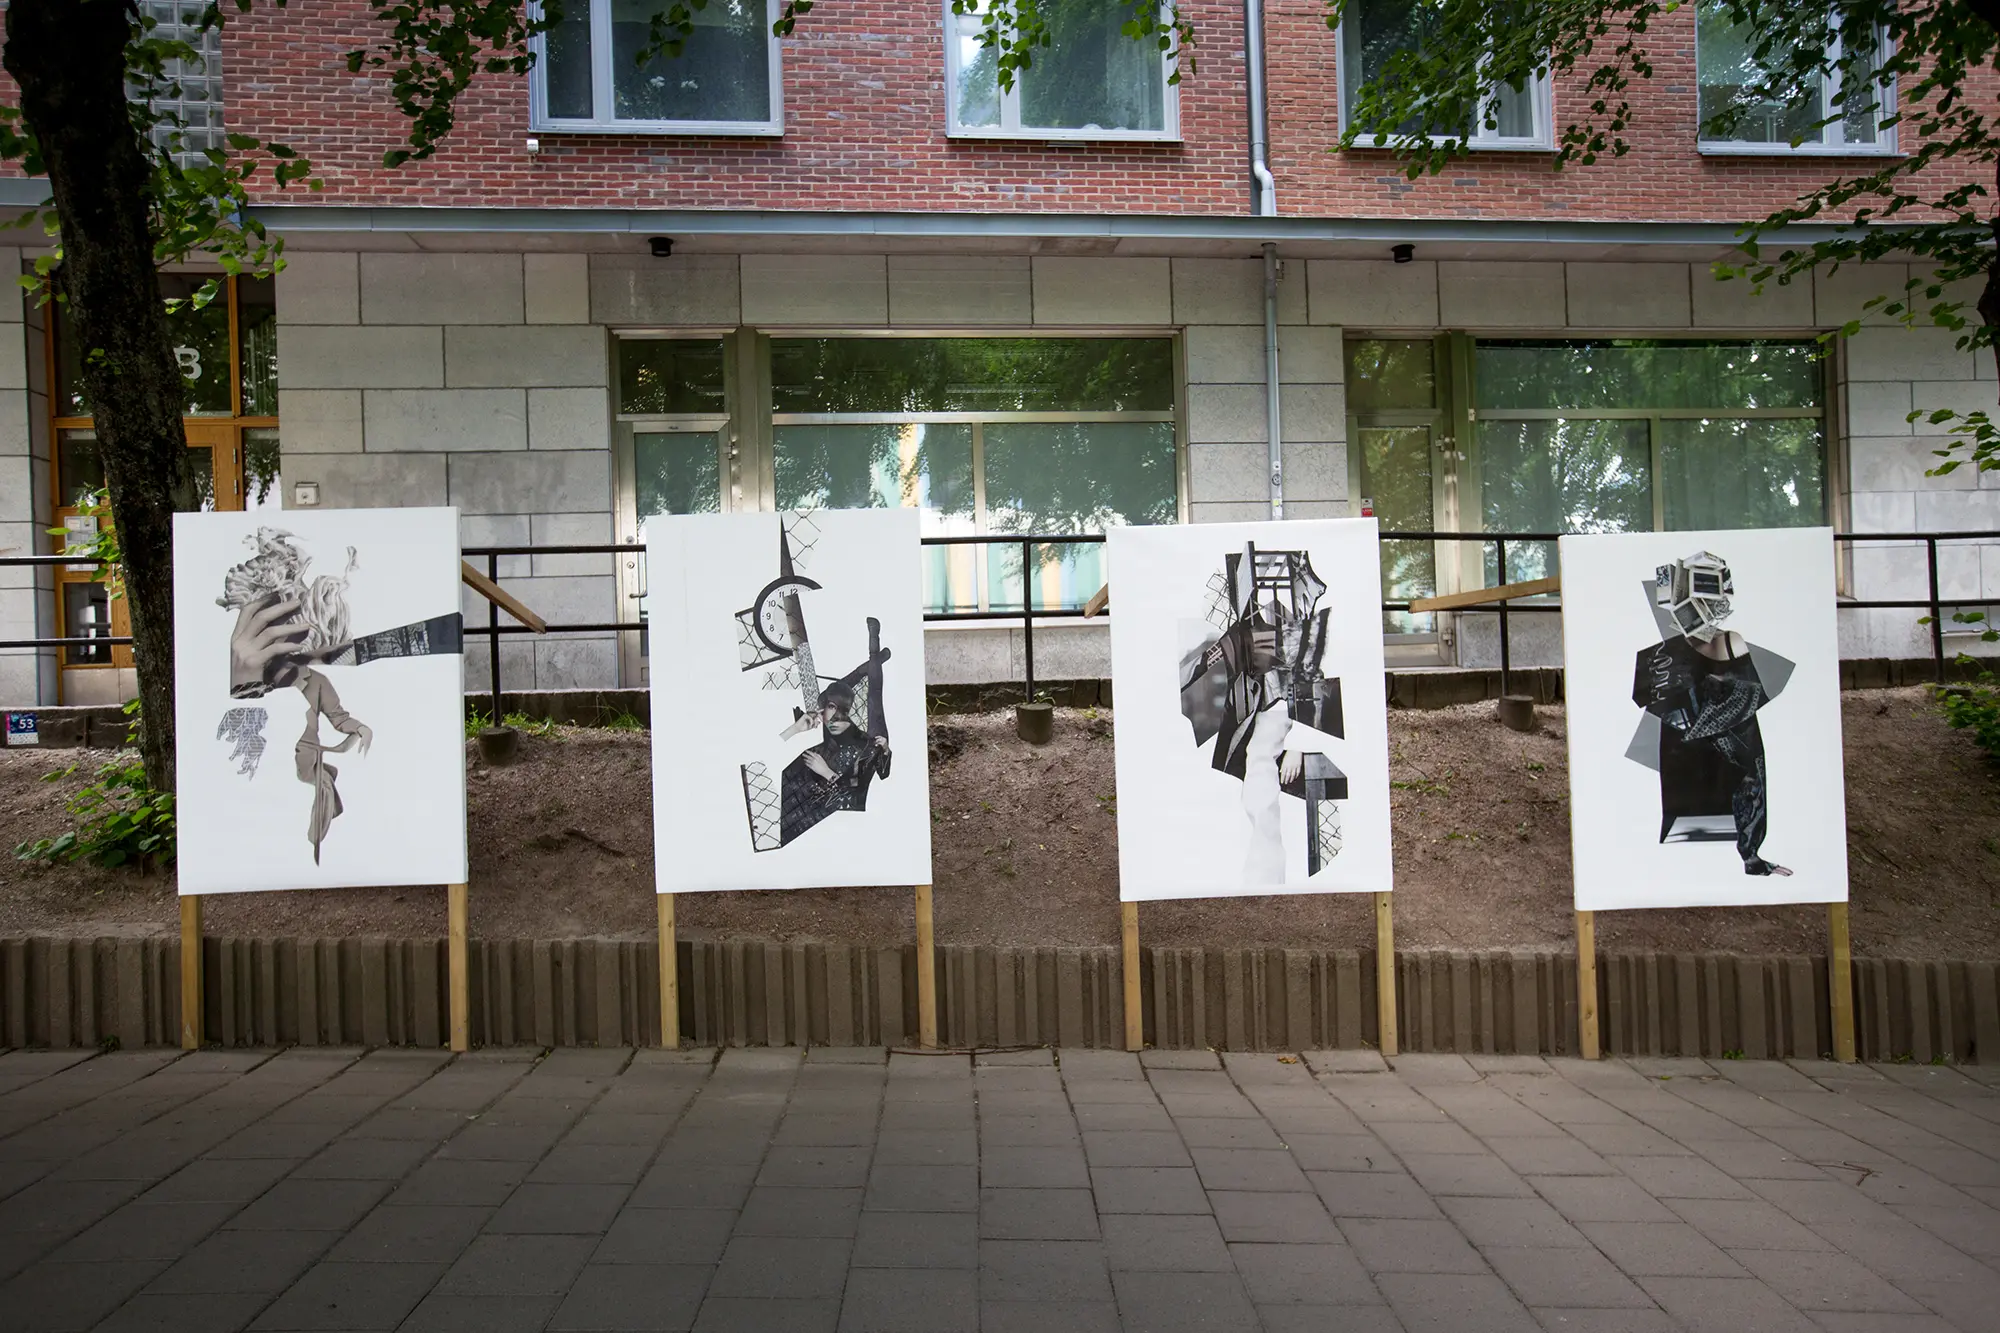 På en gata framför en husfasad står fyra stora svartvita bildkollage uppställda på träpinnar. På kollagen syns olika abstrakta kompositioner av olika utklippta motiv från fotografier, bland annat en hand, en klocka och människor.